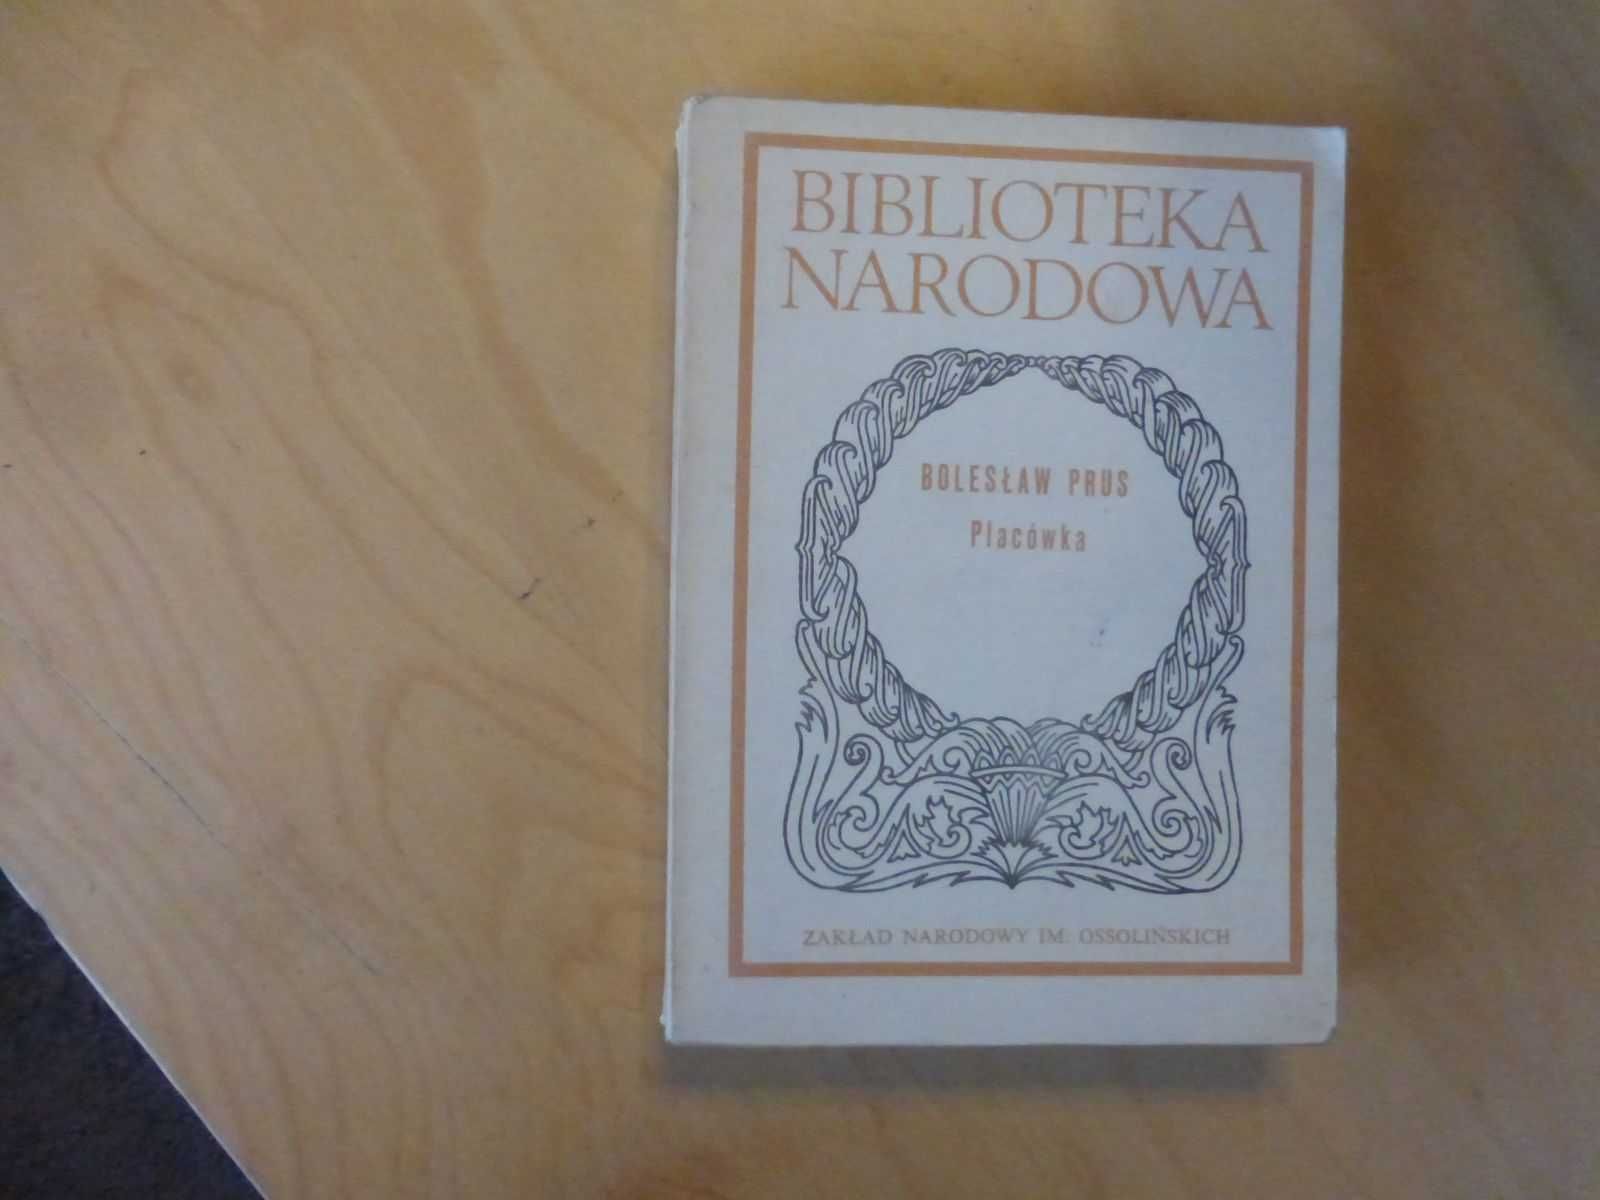 Placówka. Bolesław Prus seria Biblioteka Narodowa